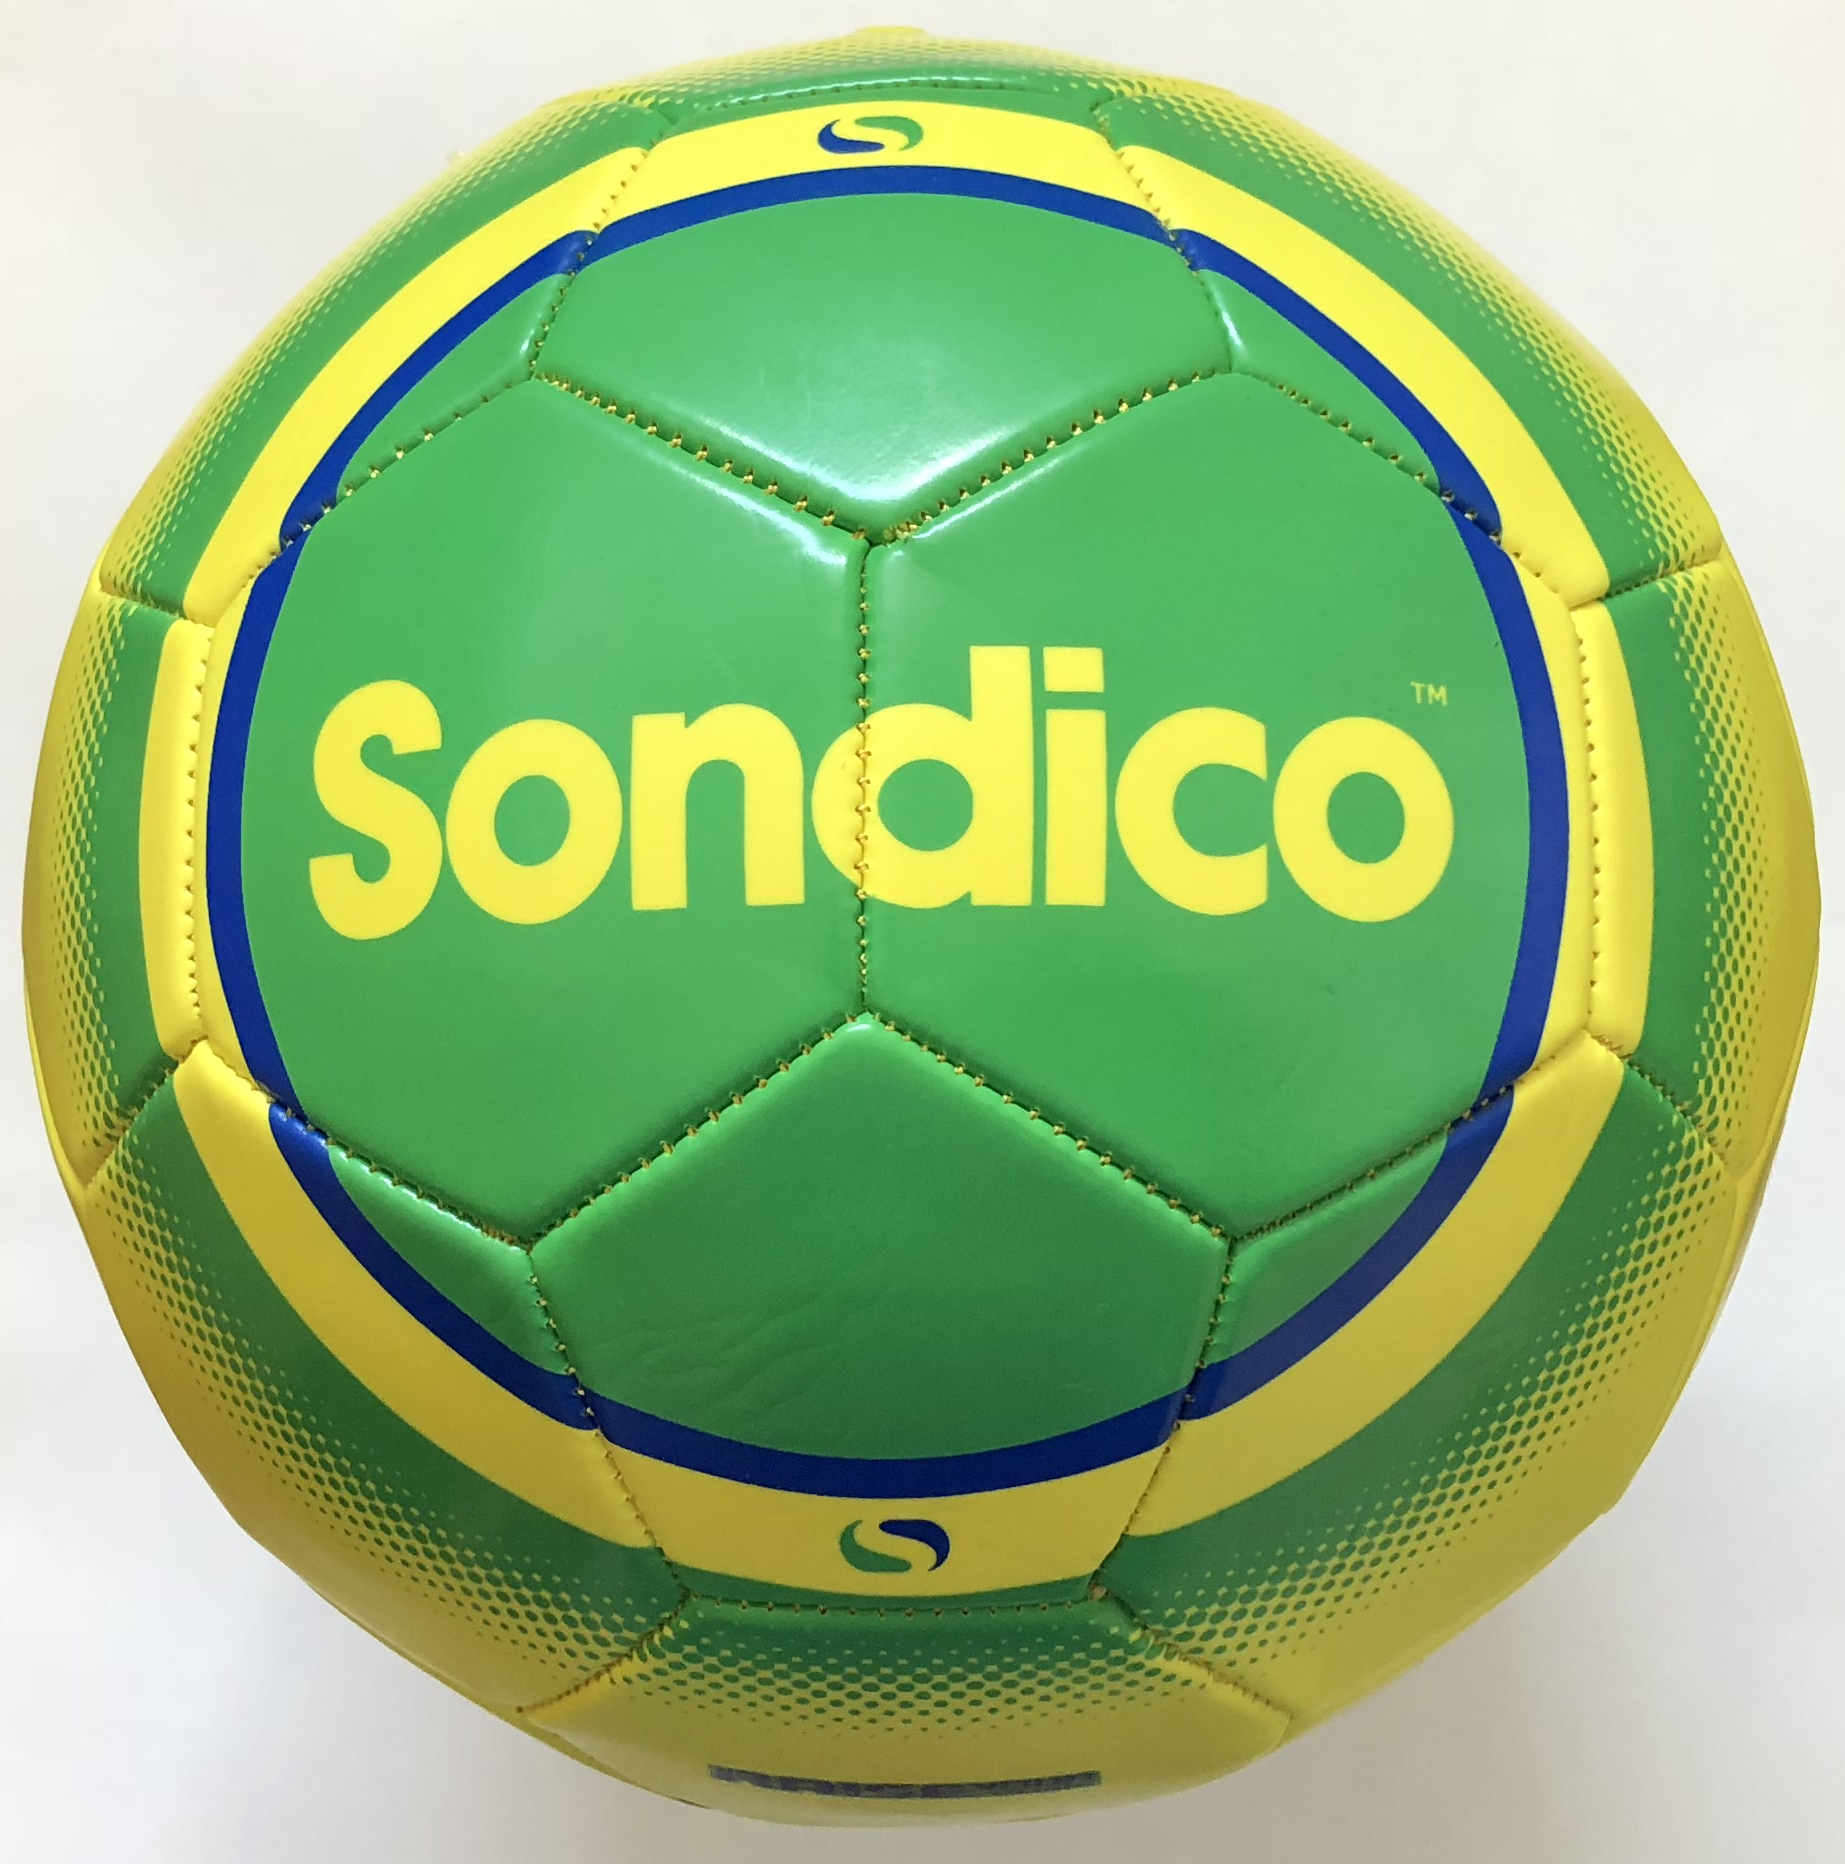 fotbalový míč, kopačák SONDICO, velikost 4, barva žlutá/zelená/modrá